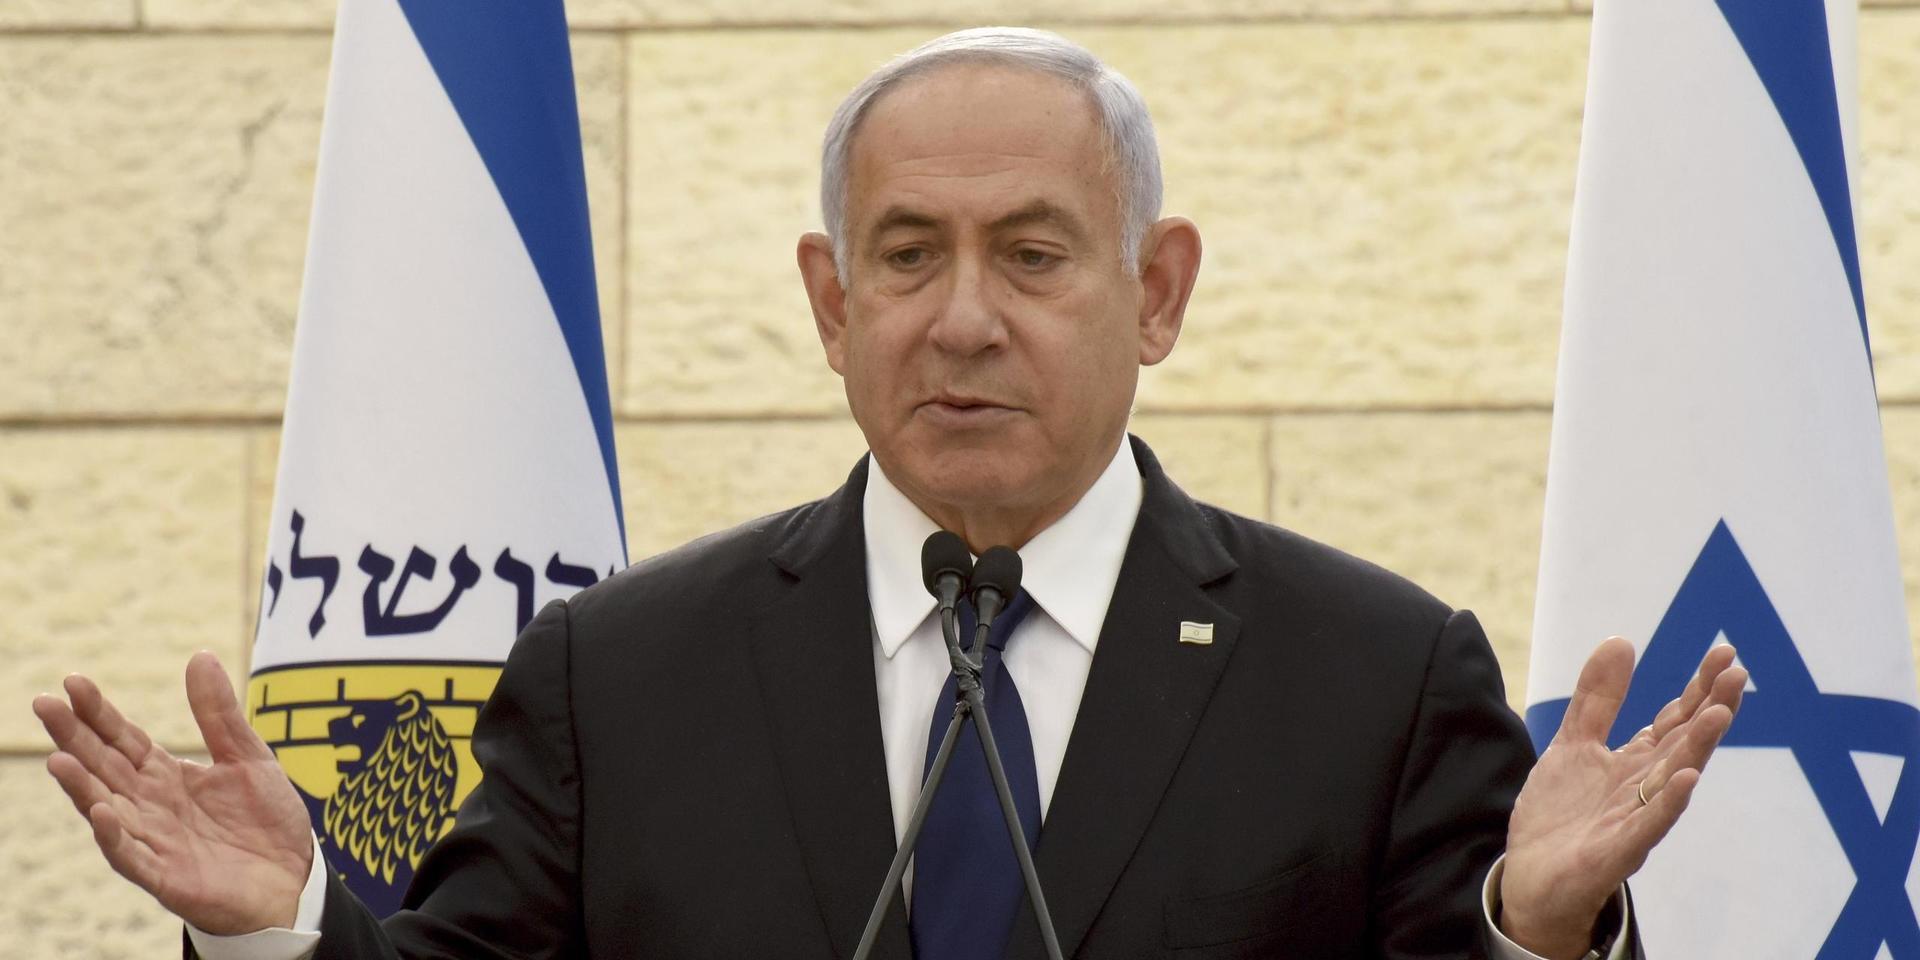 Klockan har slagit för Israels premiärminister Benjamin Netanyahu. Arkivbild.